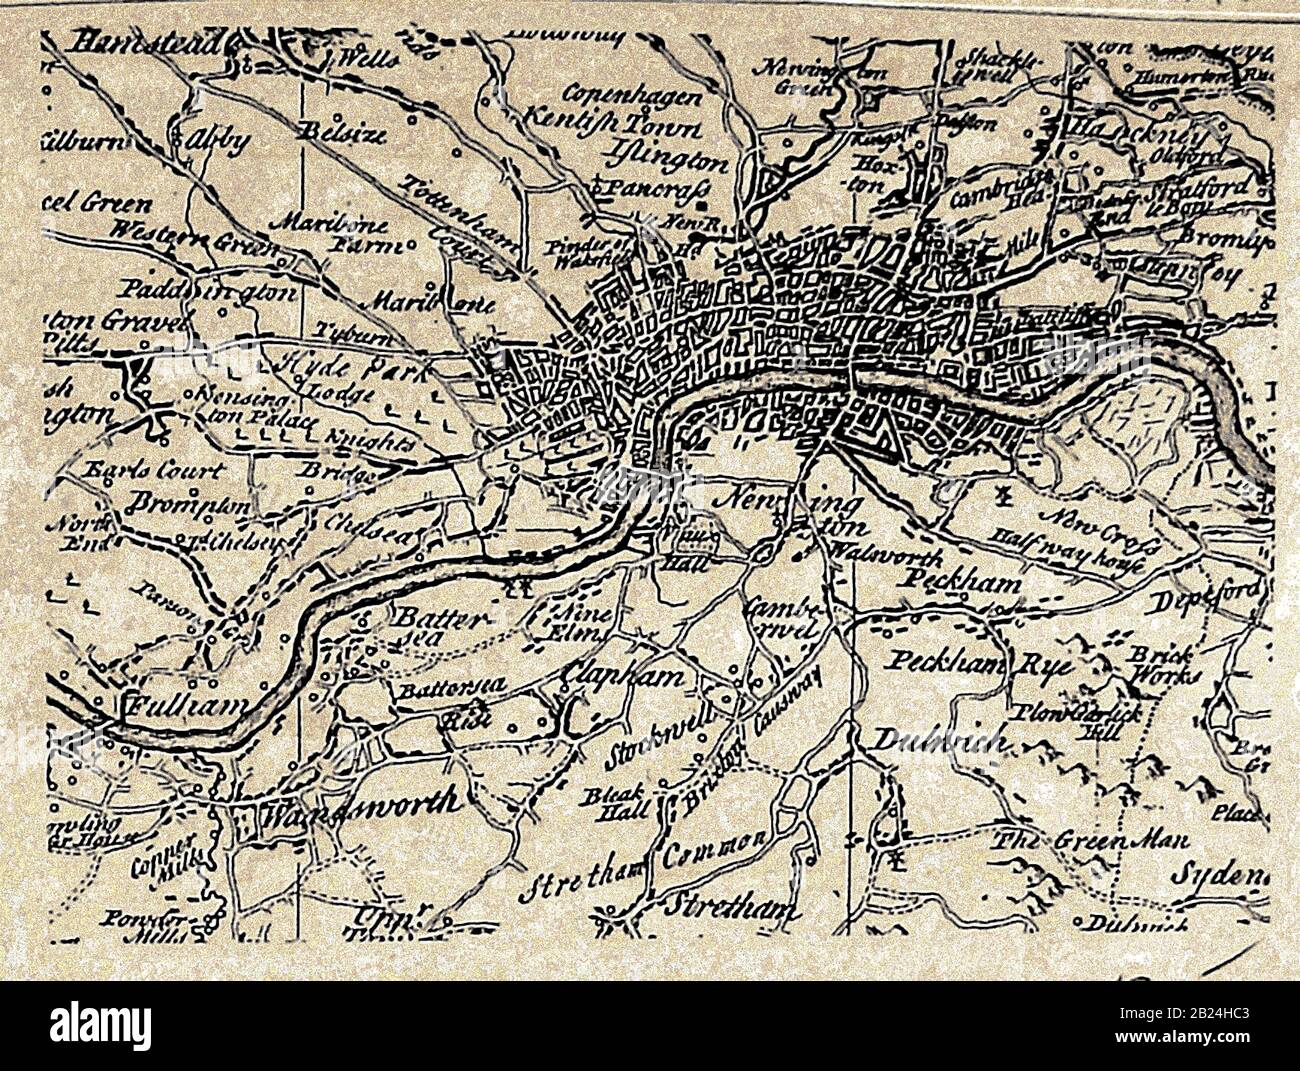 Eine Karte der Stadt London (Großbritannien), Dörfer, Gasthäuser, Umgebung usw. in den 1700 Jahren, mit Schreibweisen zu dieser Zeit Stockfoto